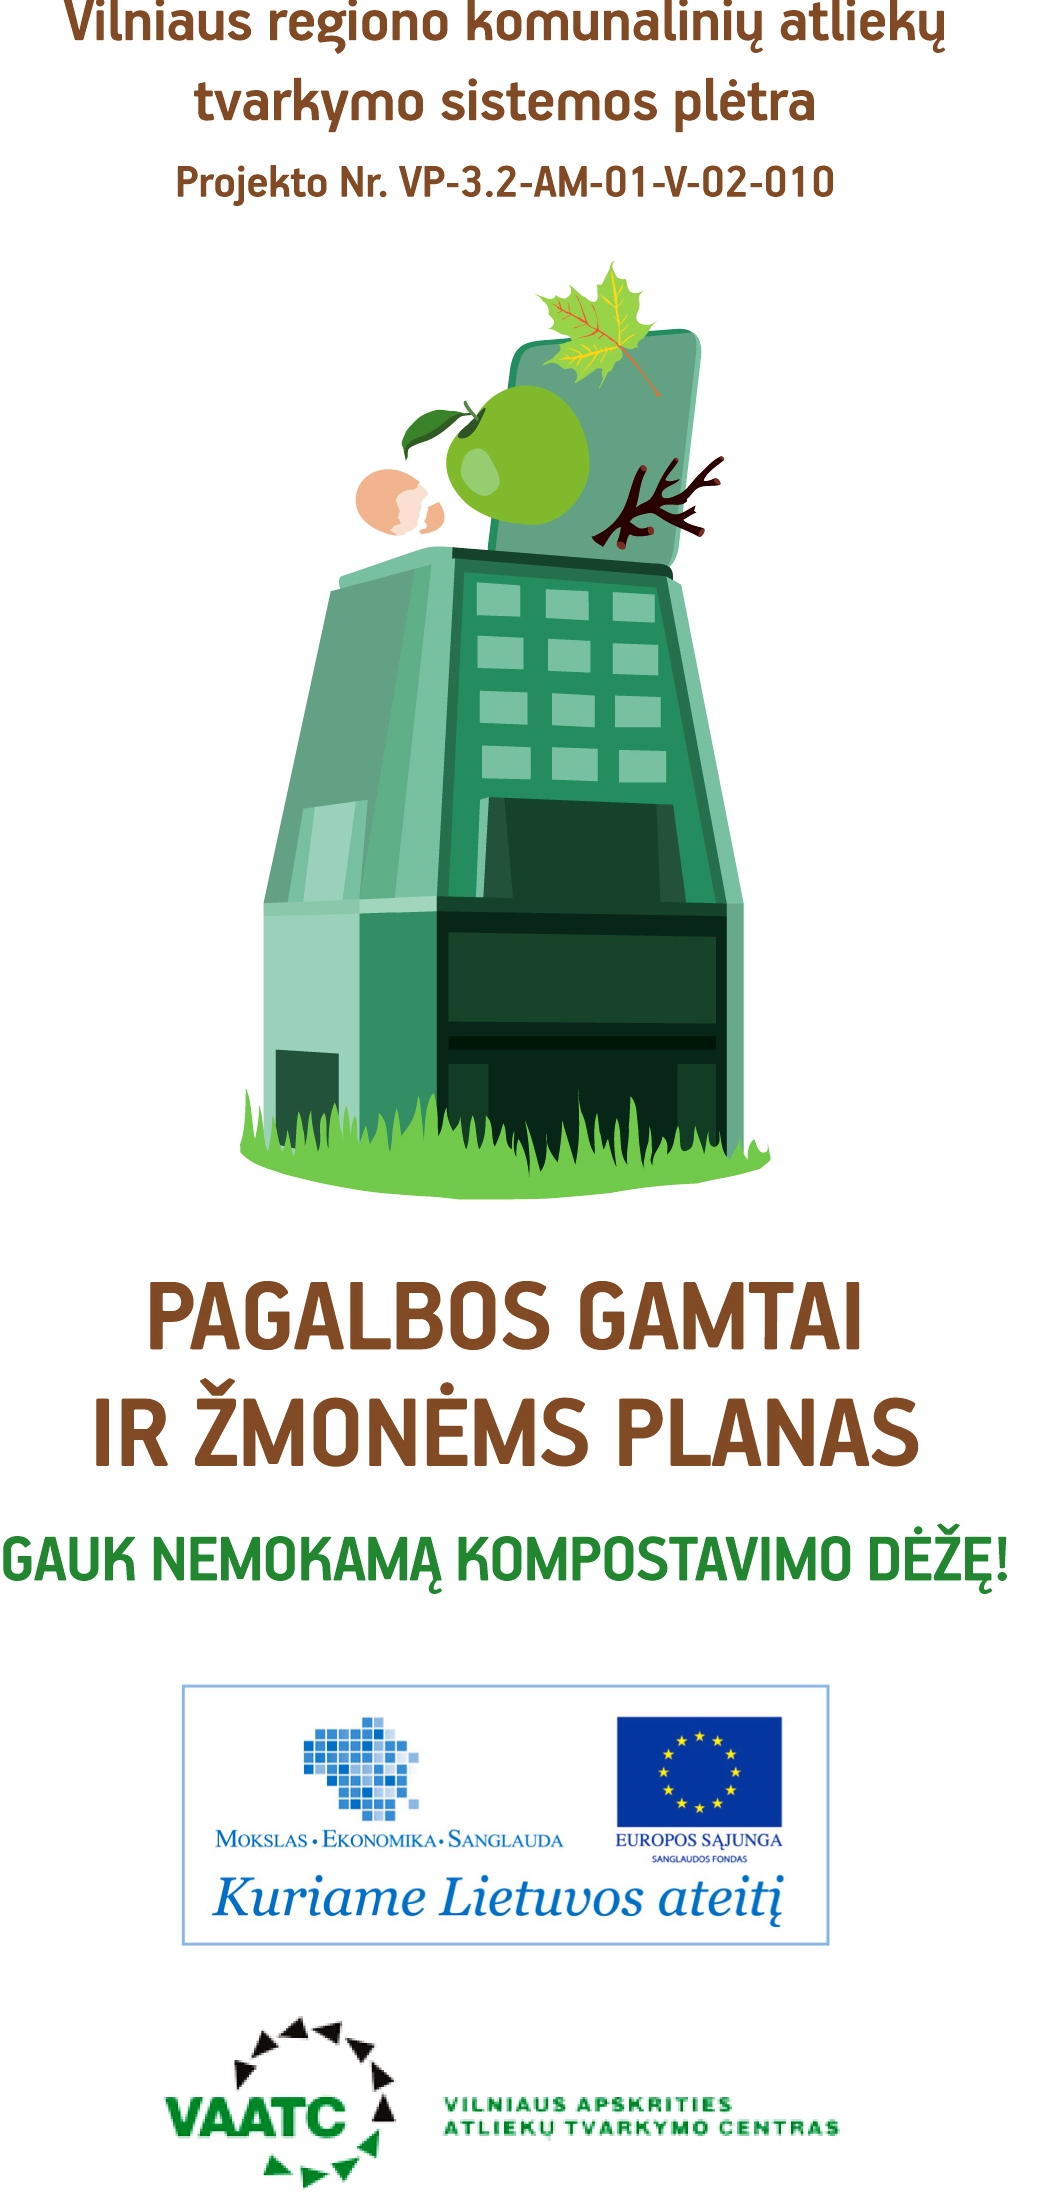 Vilniaus regiono individualių valdų savininkai kviečiami nemokamai įsigyti kompostavimo dėžes